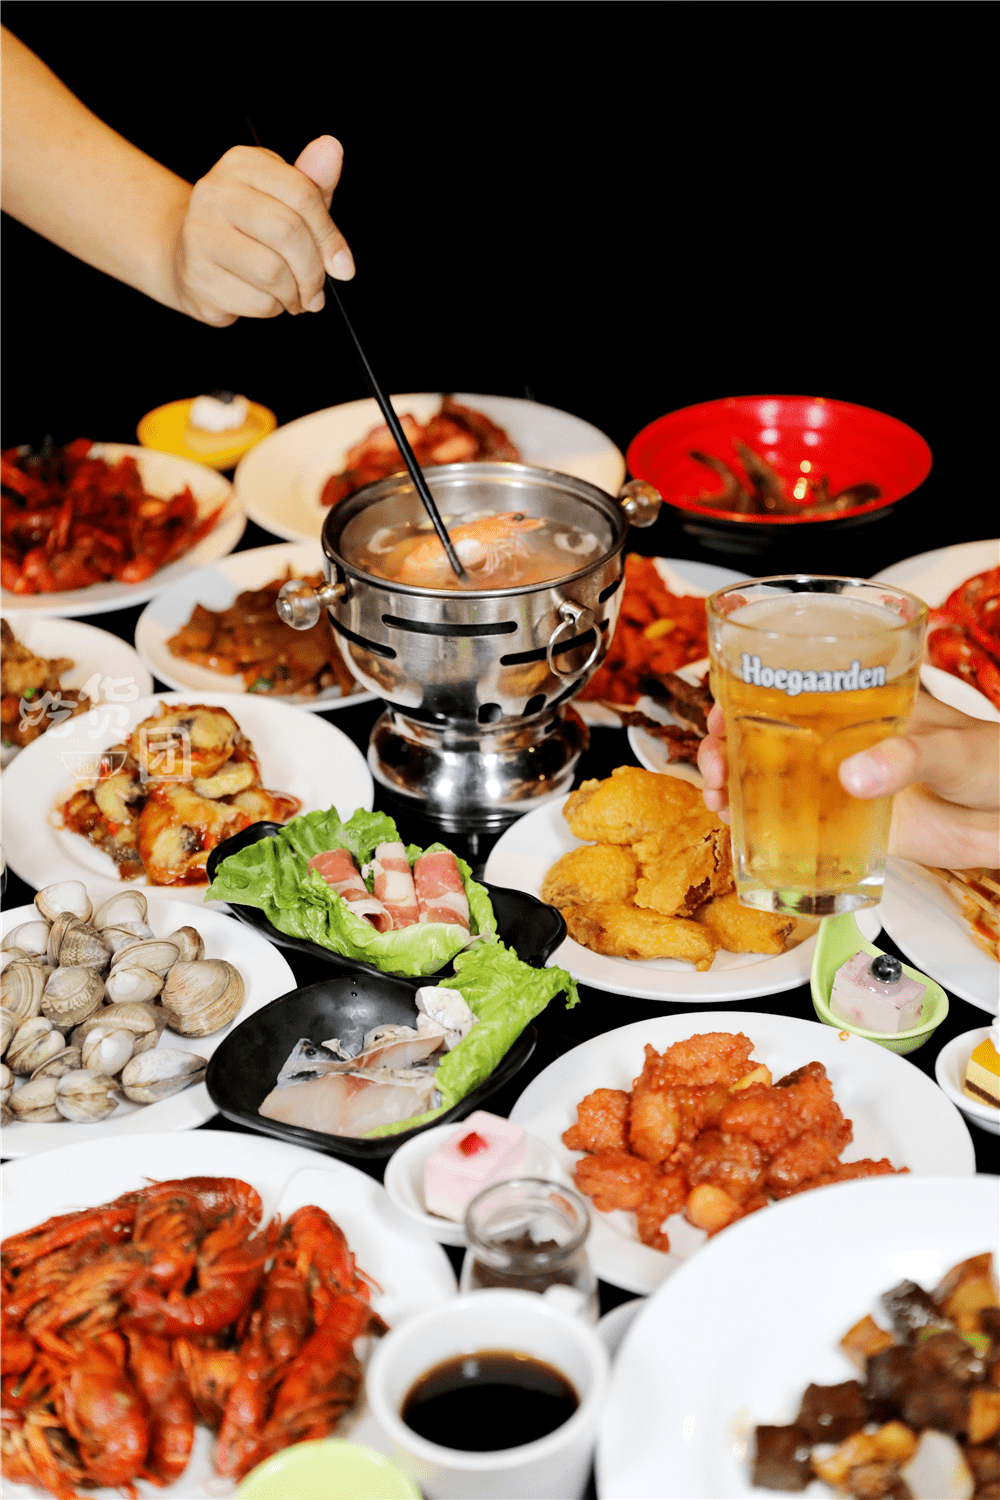 星级酒店自助餐来了,海鲜火锅铁板100 菜品畅吃!